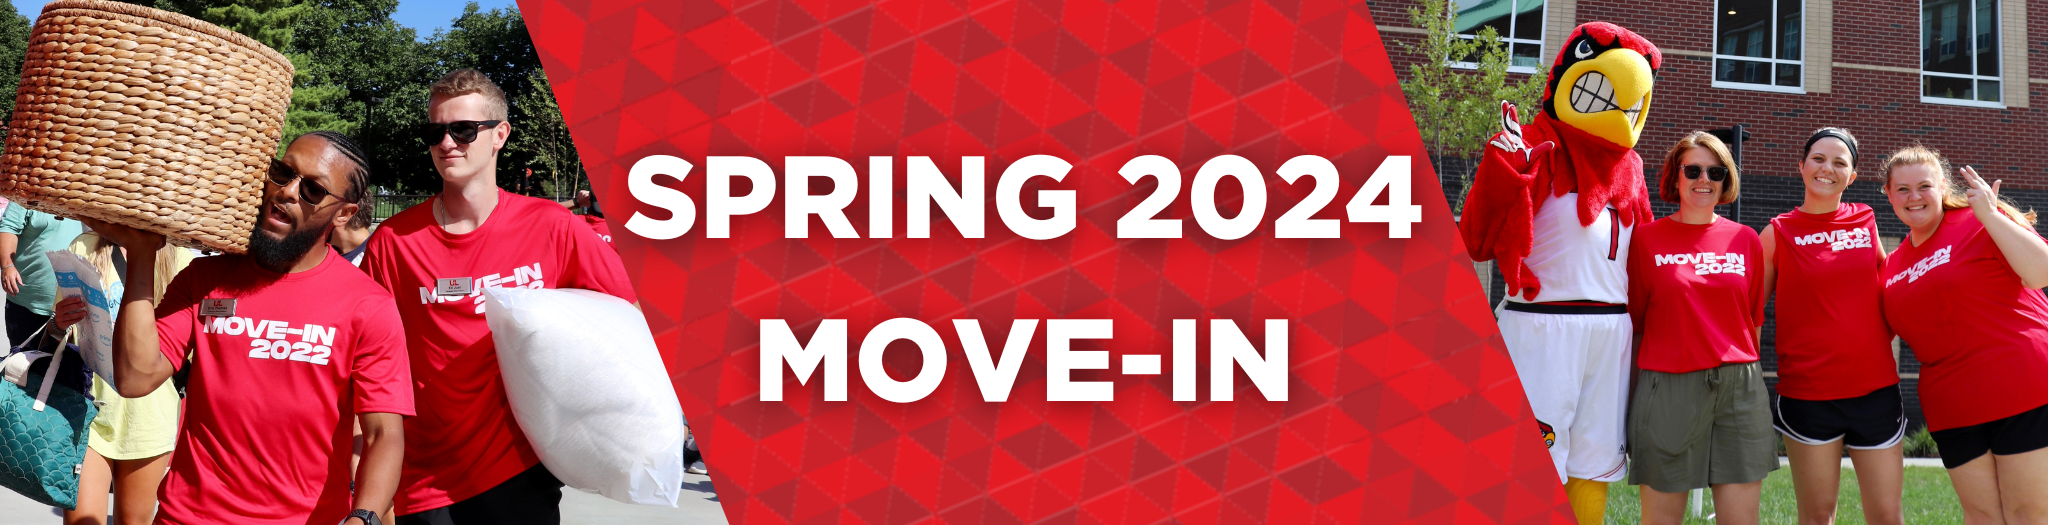 spring 2024 move-in